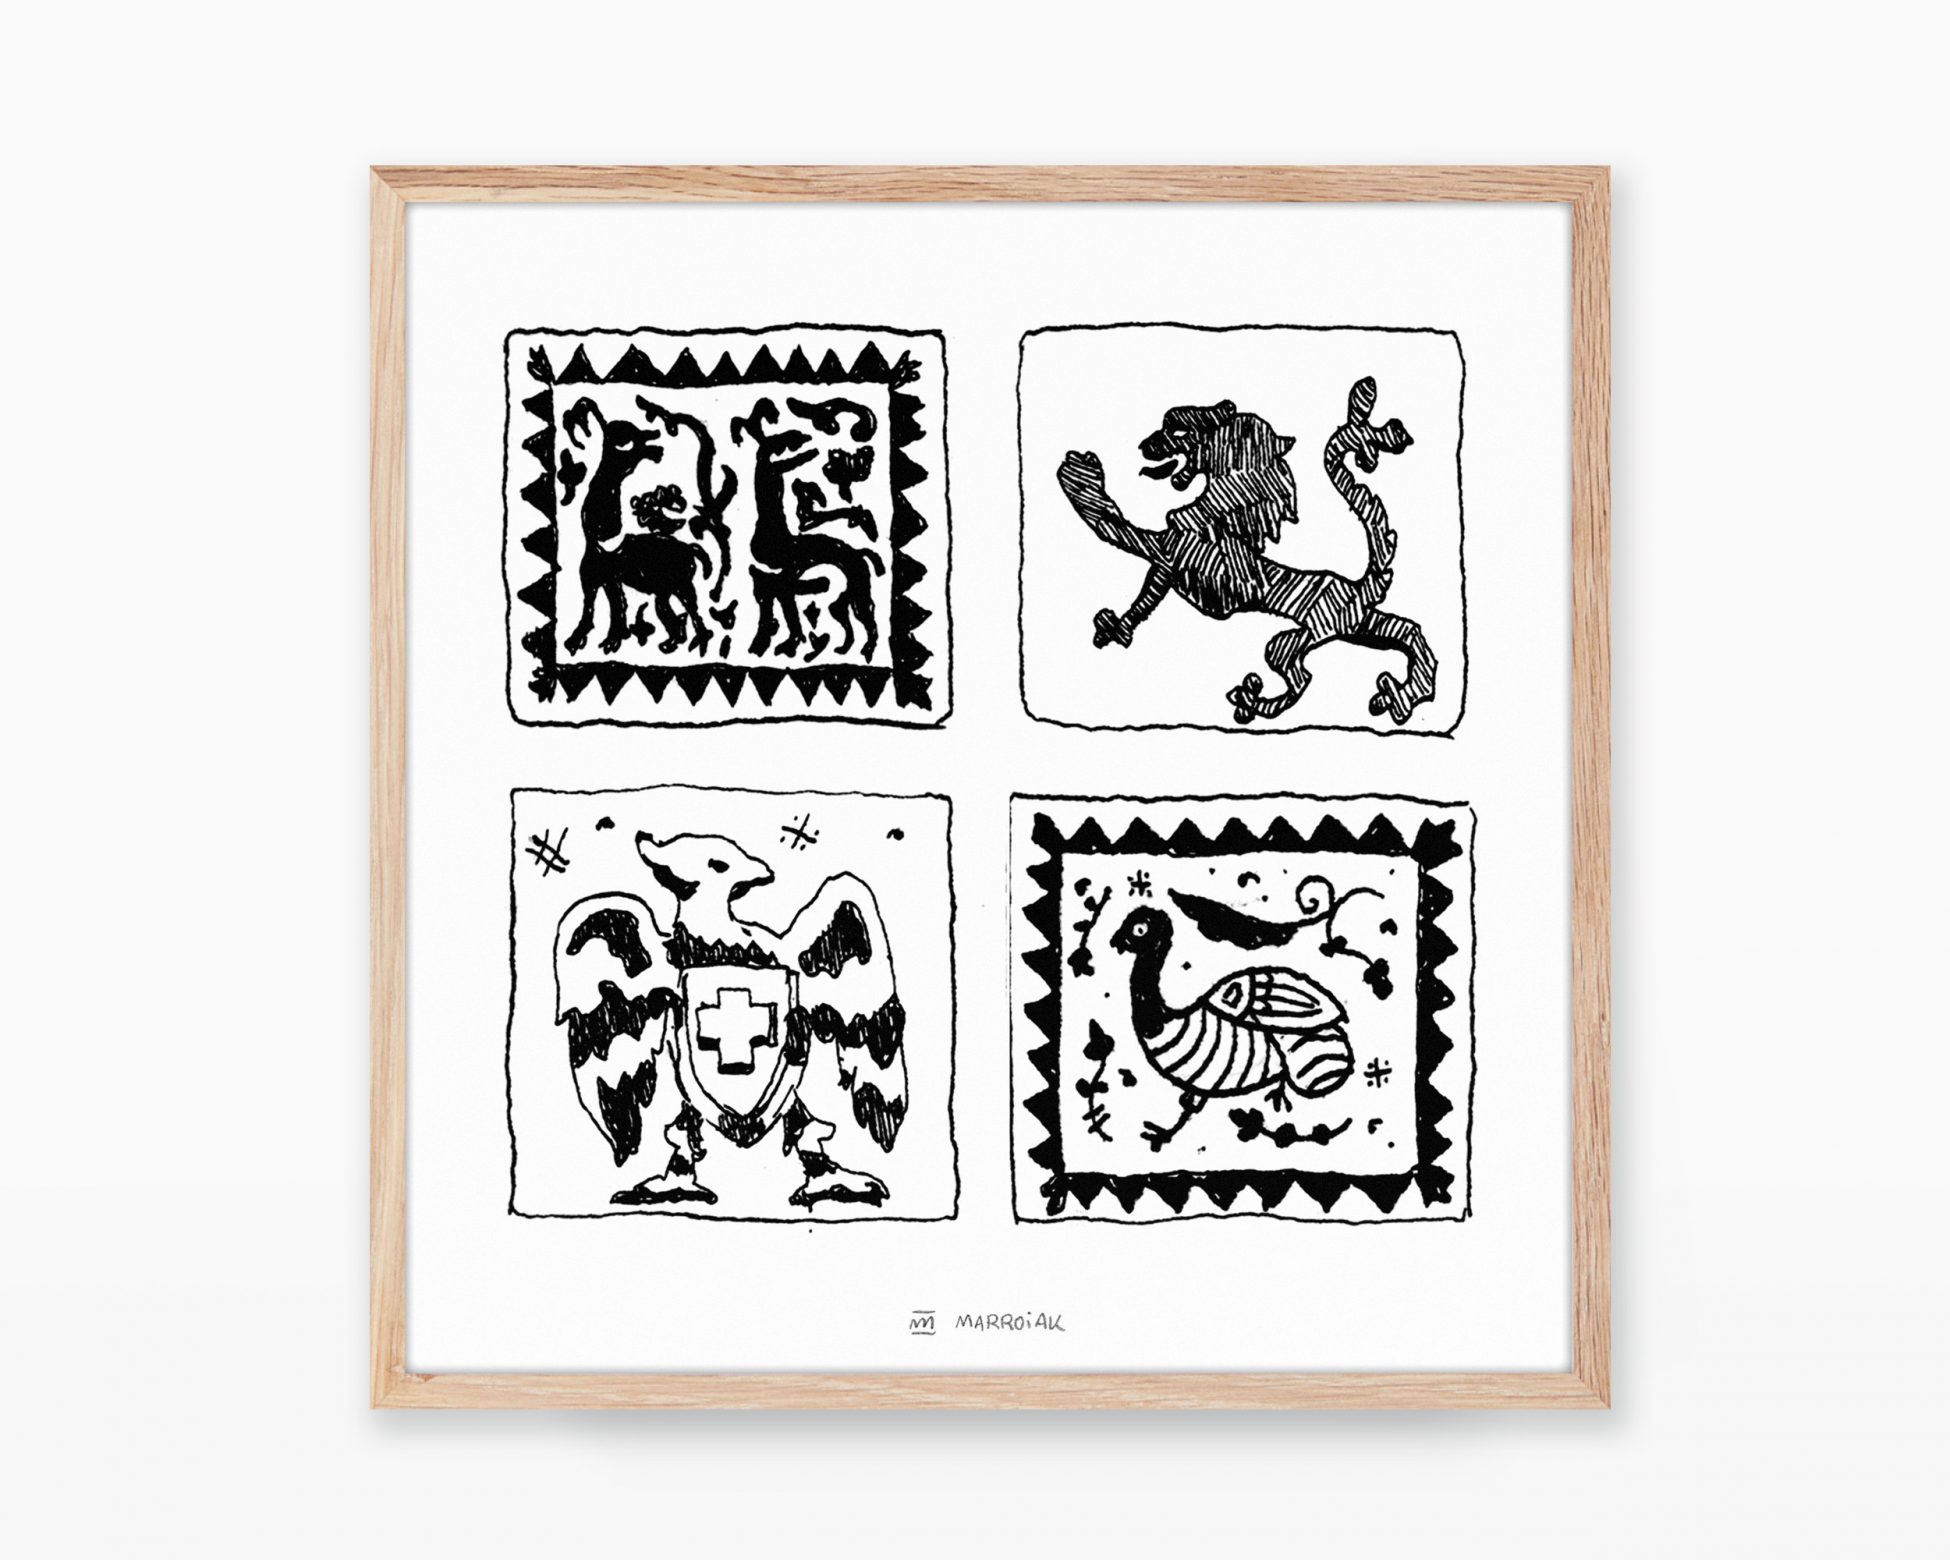 Taulell valenciano en blanco y negro - Cuadro decorativo para enmarcar con un dibujo impreso sobre lámina de papel. Prints cultura popular de Valencia